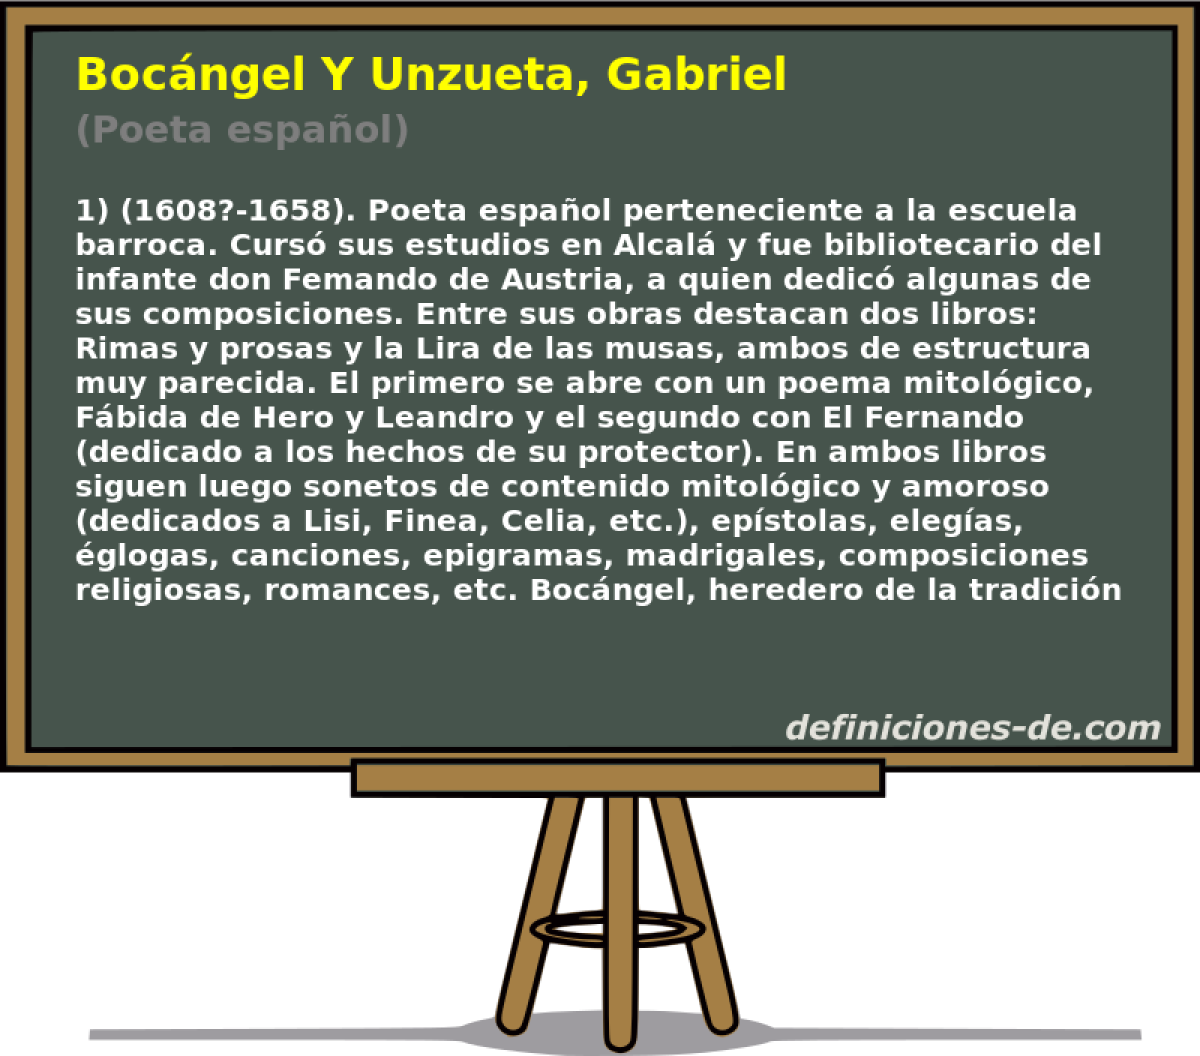 Bocngel Y Unzueta, Gabriel (Poeta espaol)